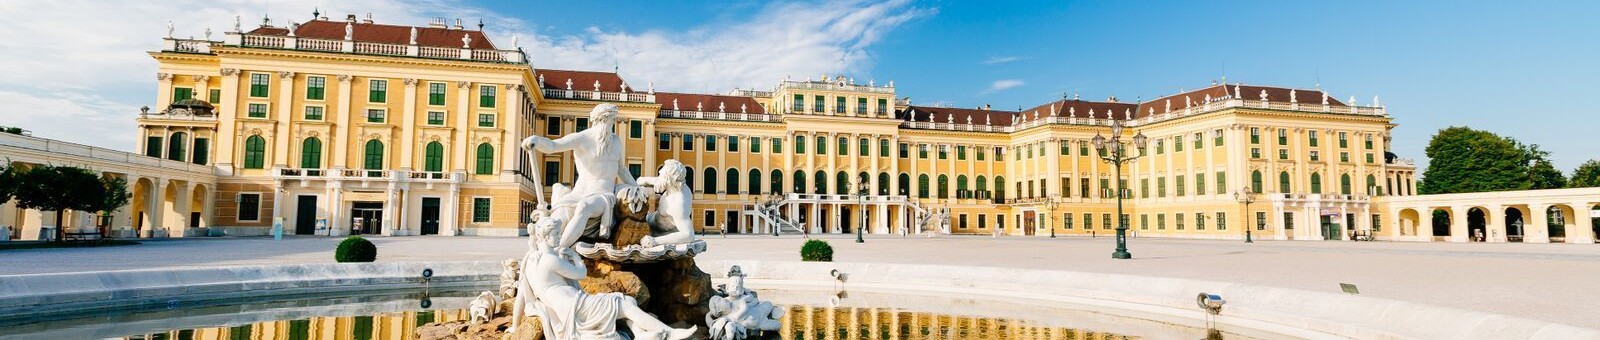     Schönbrunn palace 